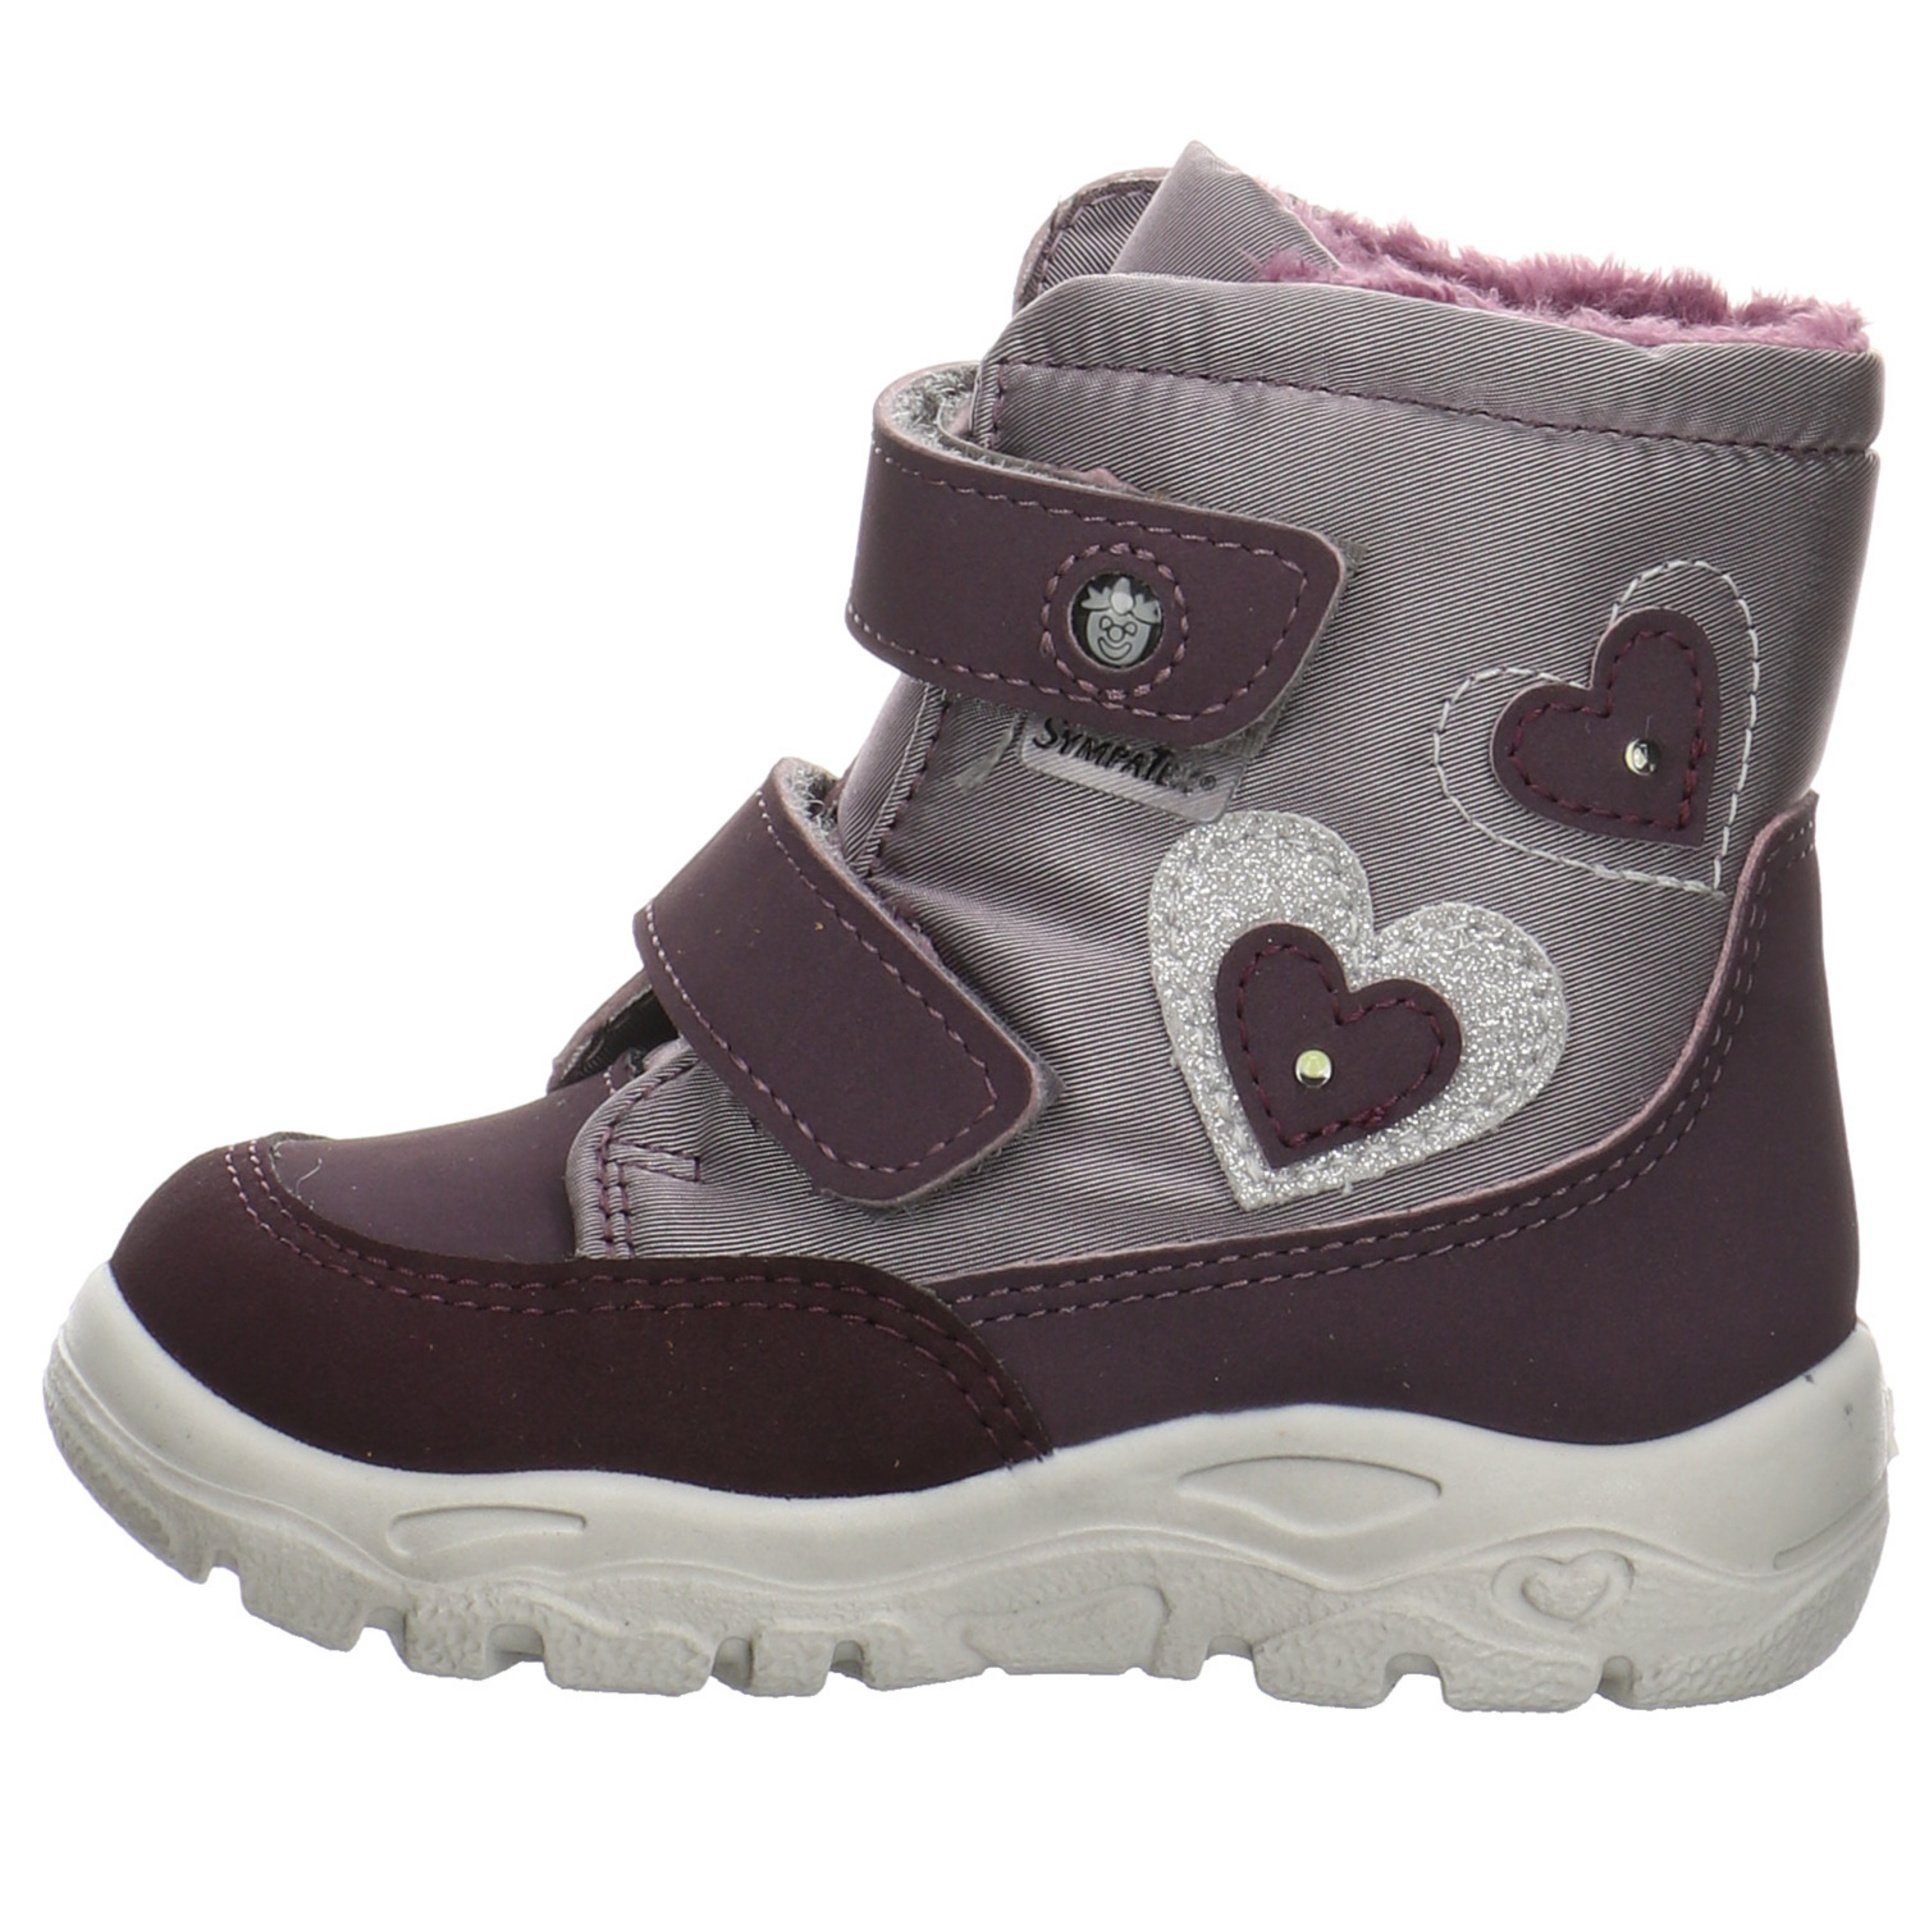 Baby Krabbelschuhe Maddi Boots dolcetto/purple Synthetikkombination Pepino Ricosta Lauflernschuhe (340) Lauflernschuh